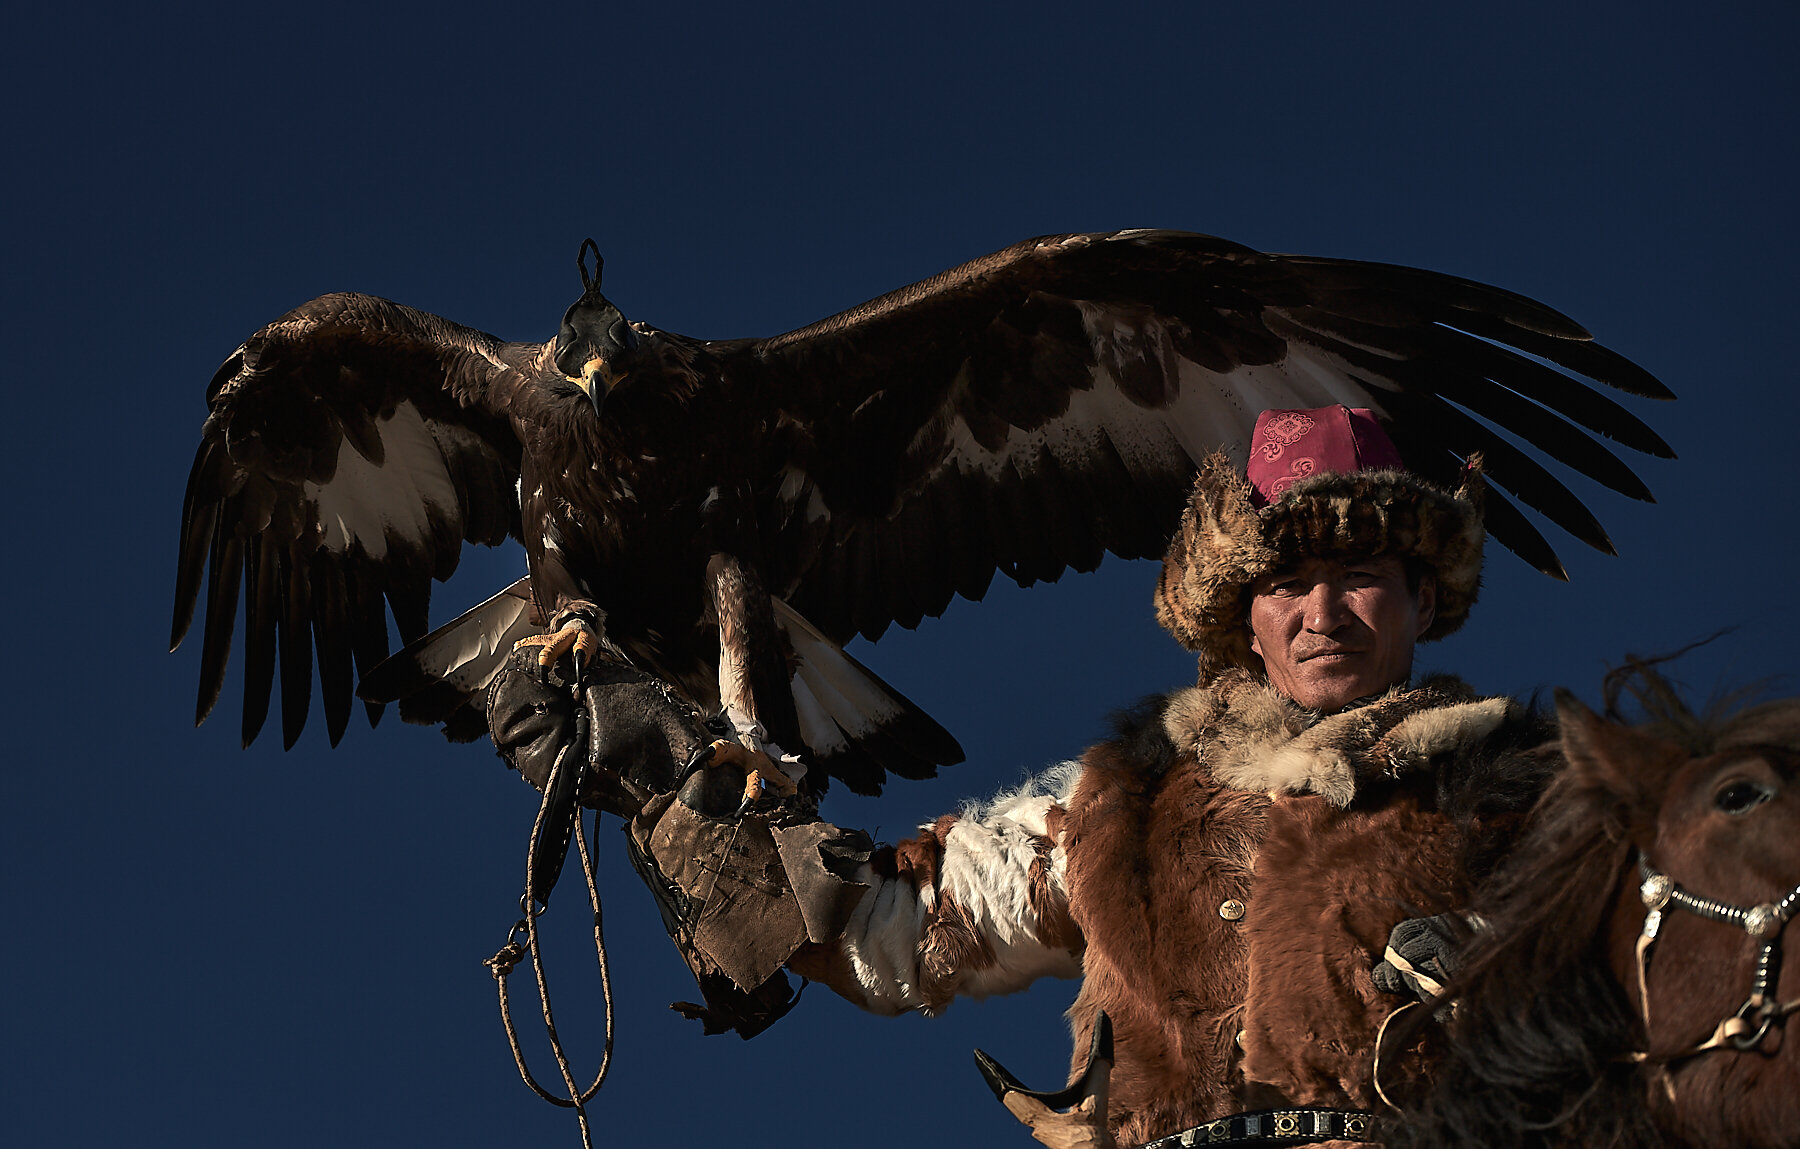 Karibek and his massive golden eagle